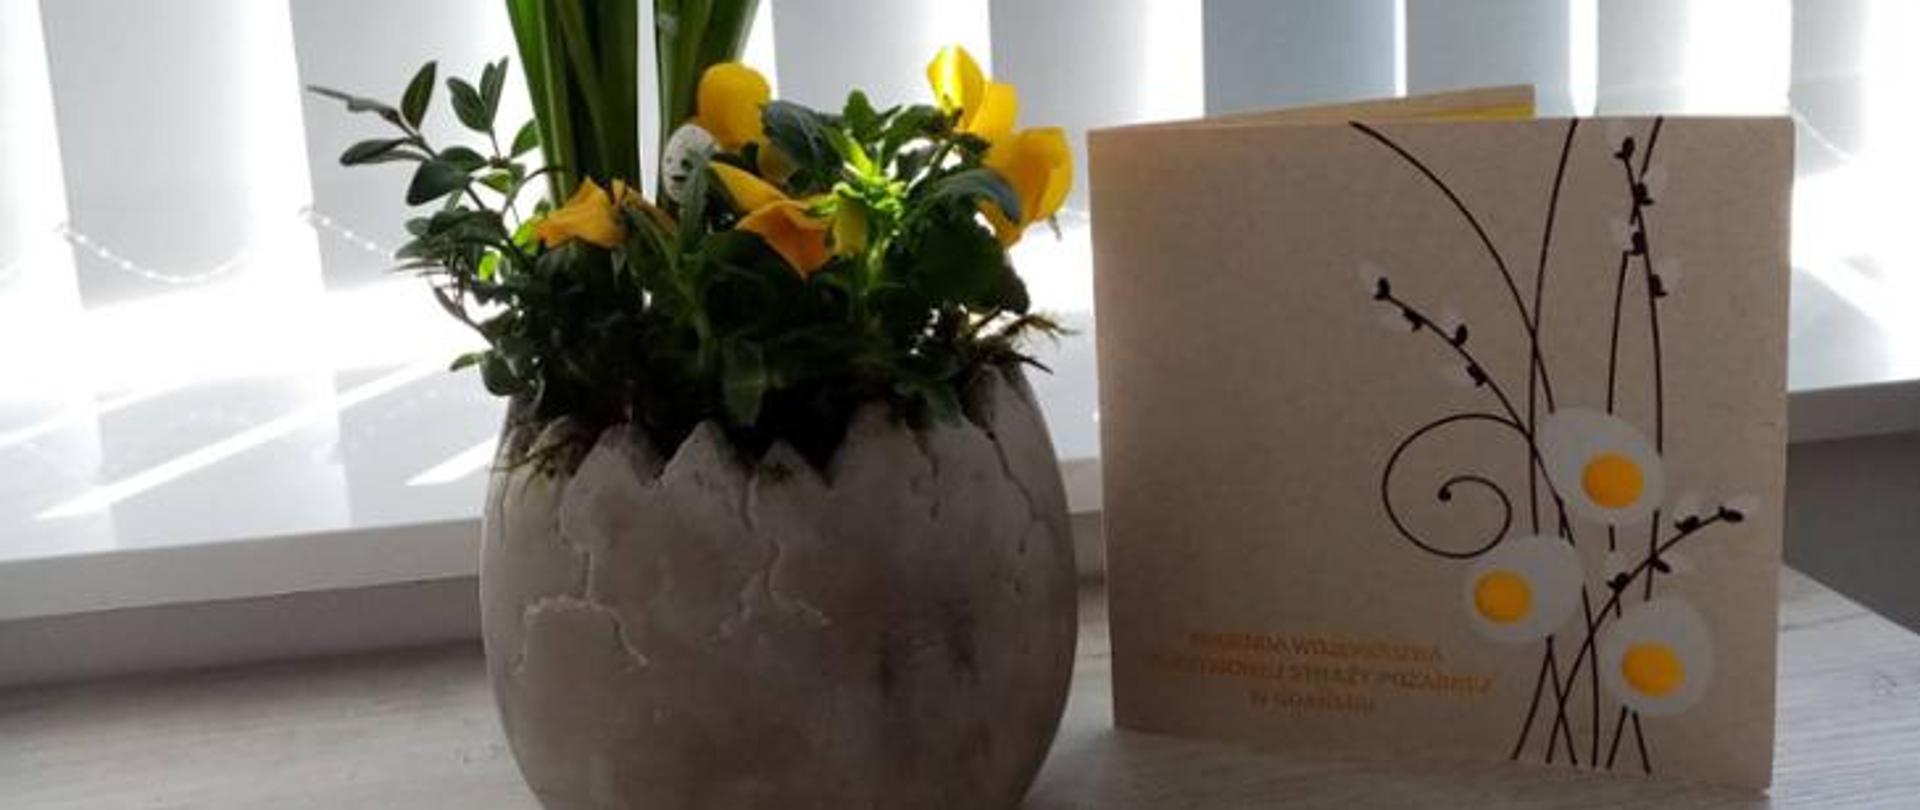 Zdjęcie ukazuje kartkę z życzeniami oraz obok stoi wazon w kształcie jaja a w nim kwiaty.